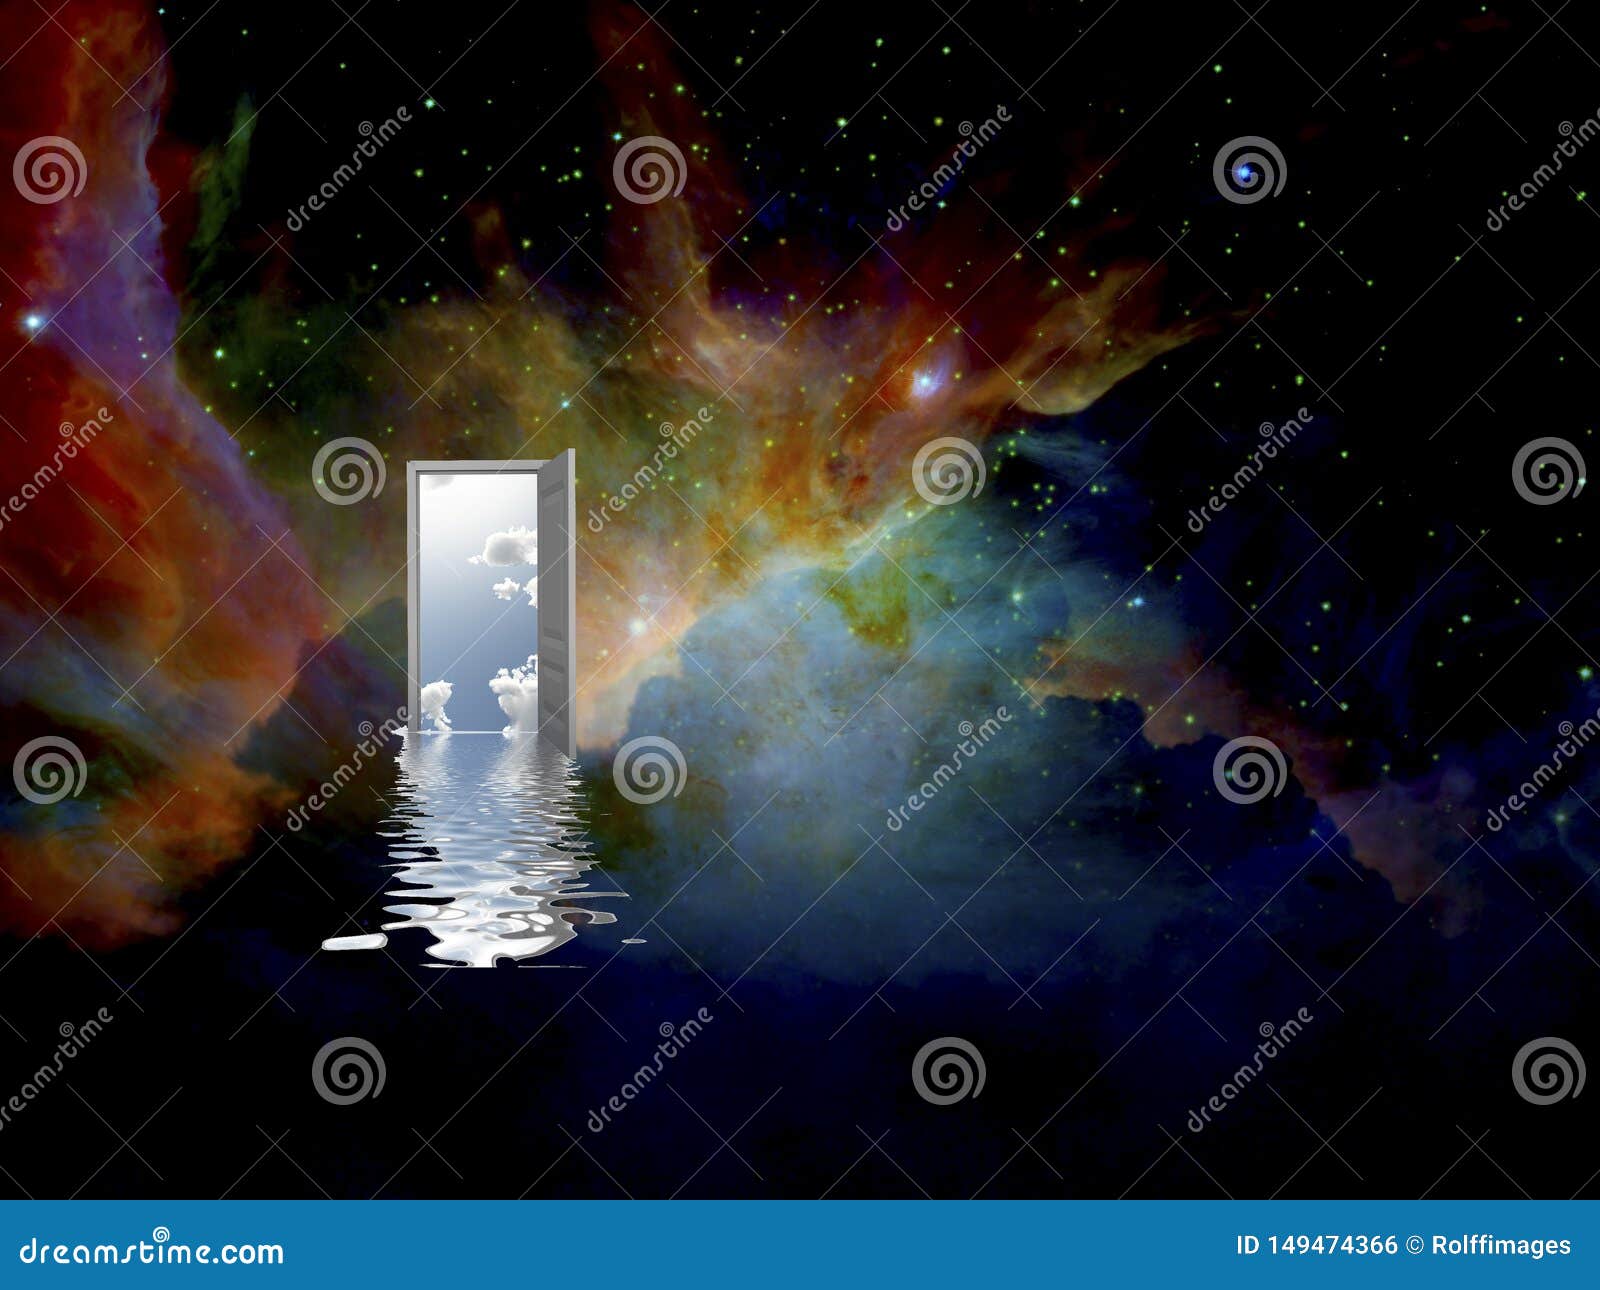 door to another world